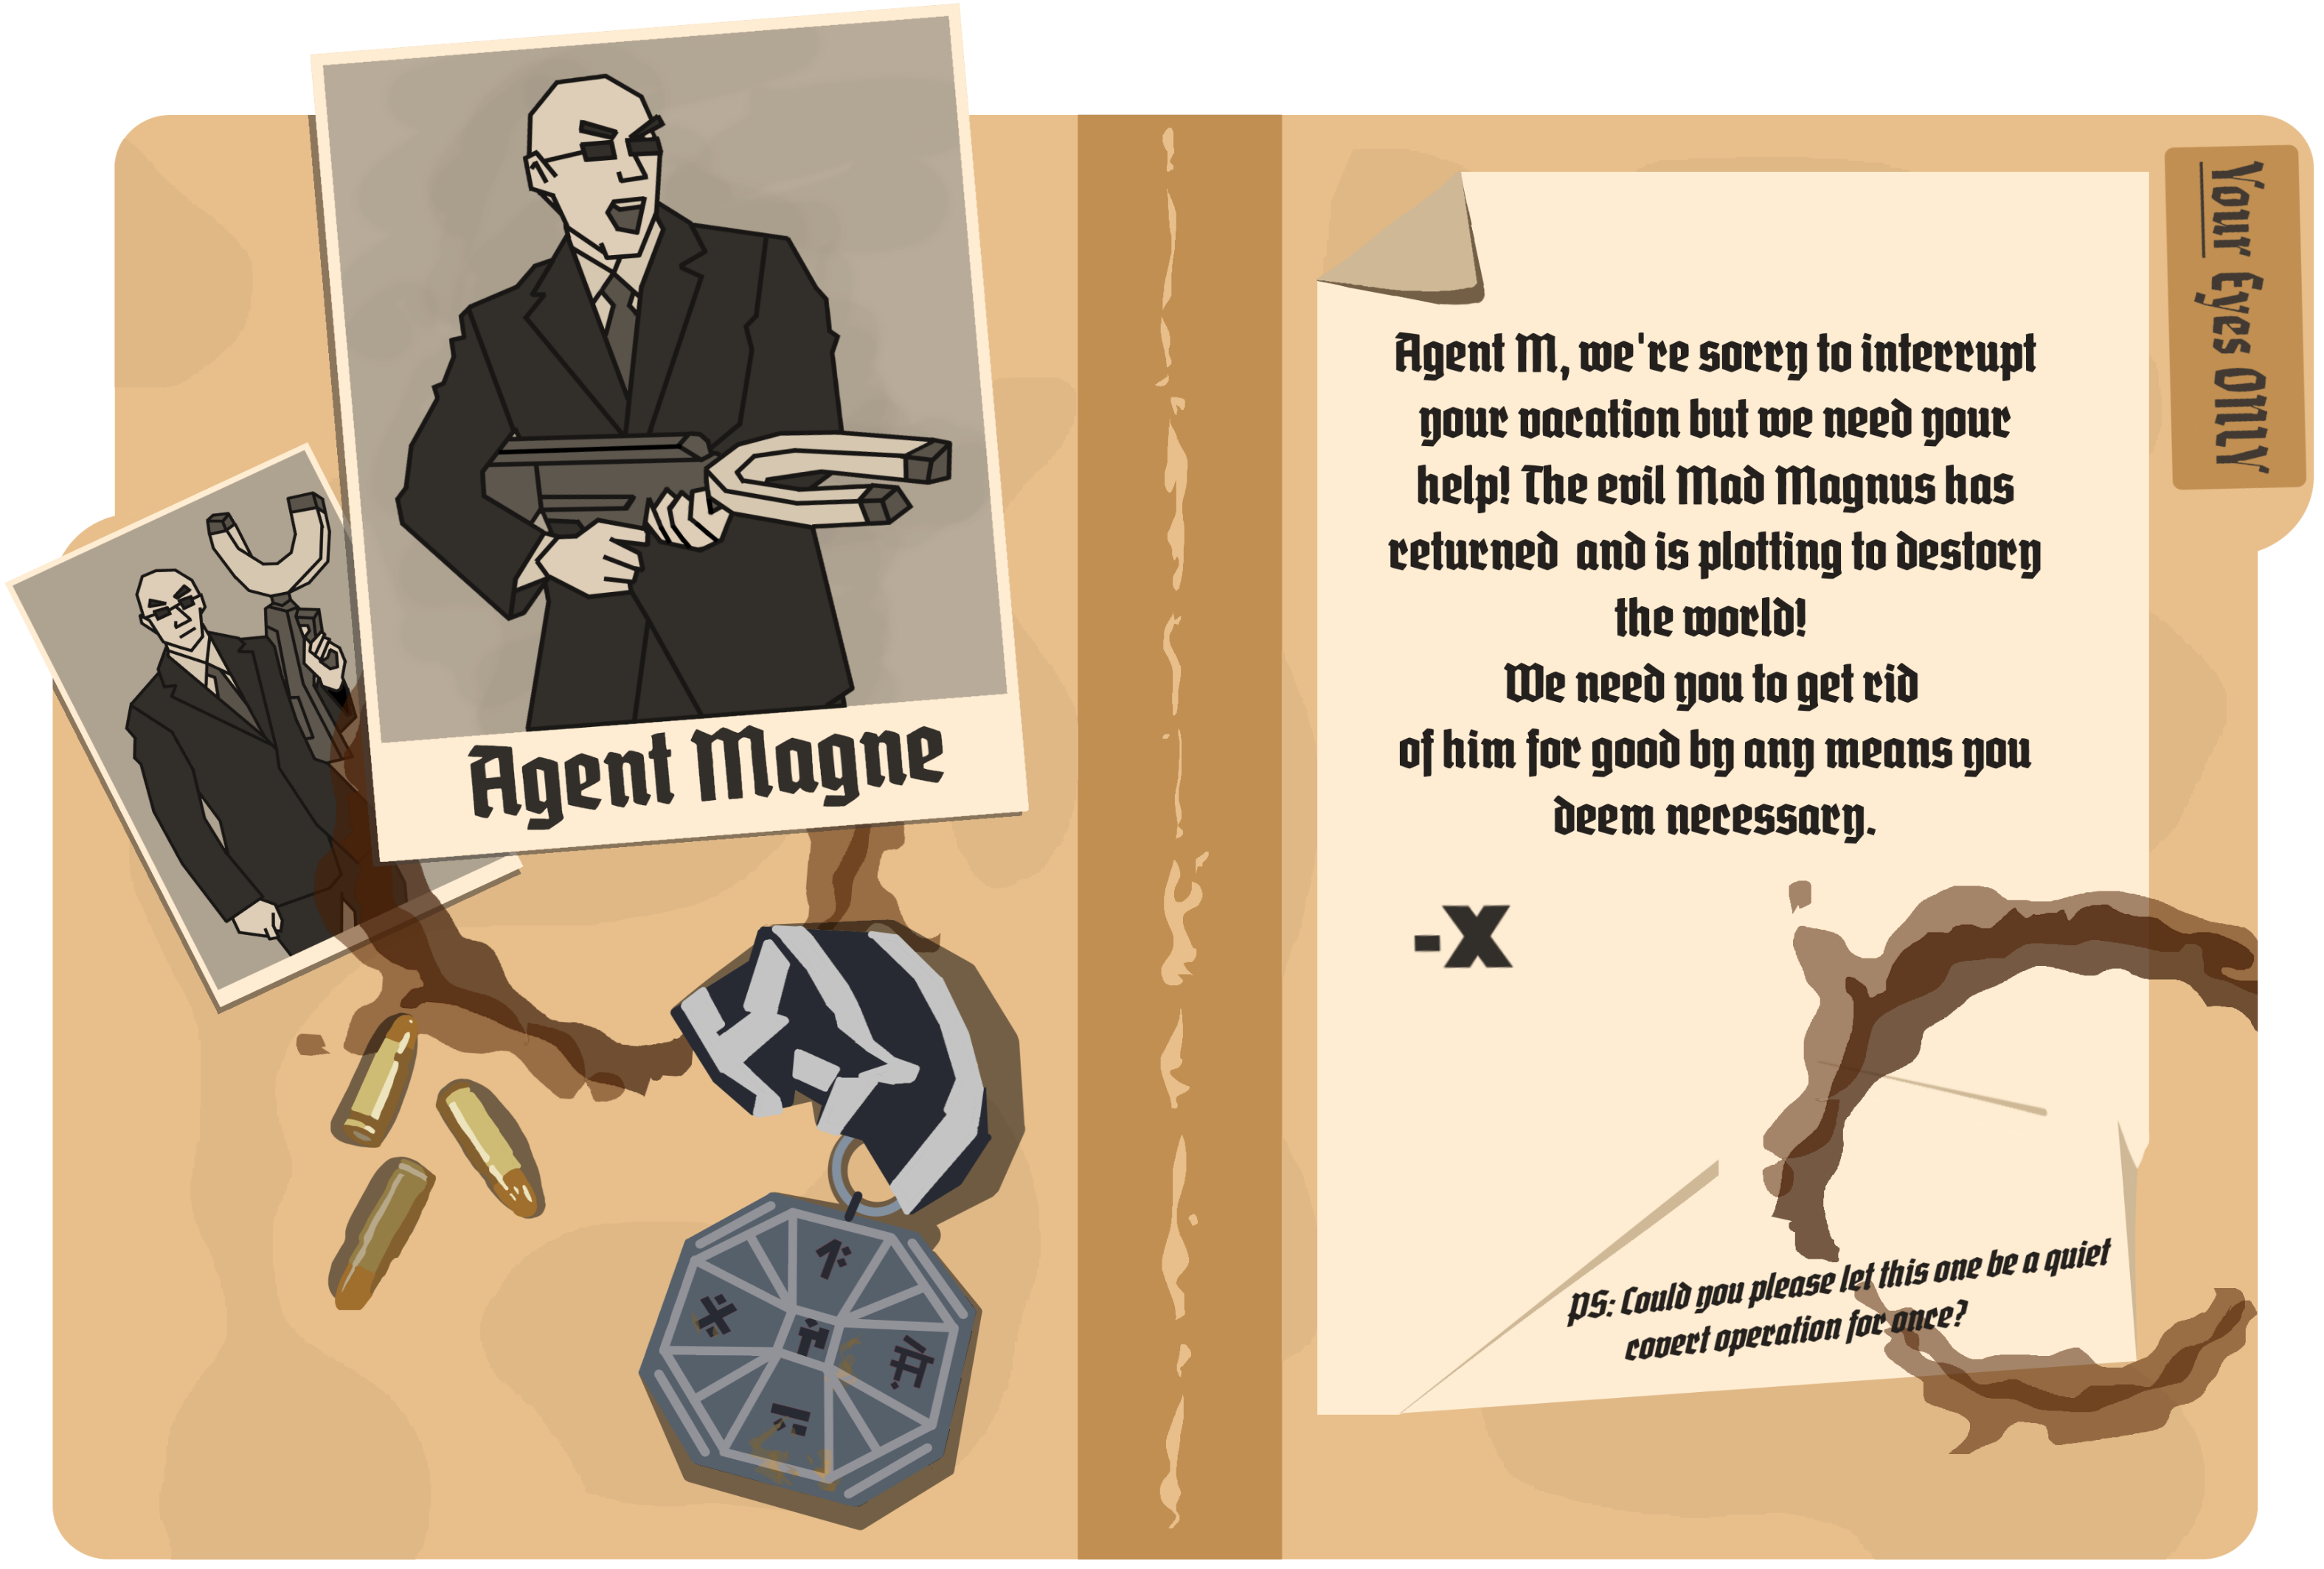 Agent Magne